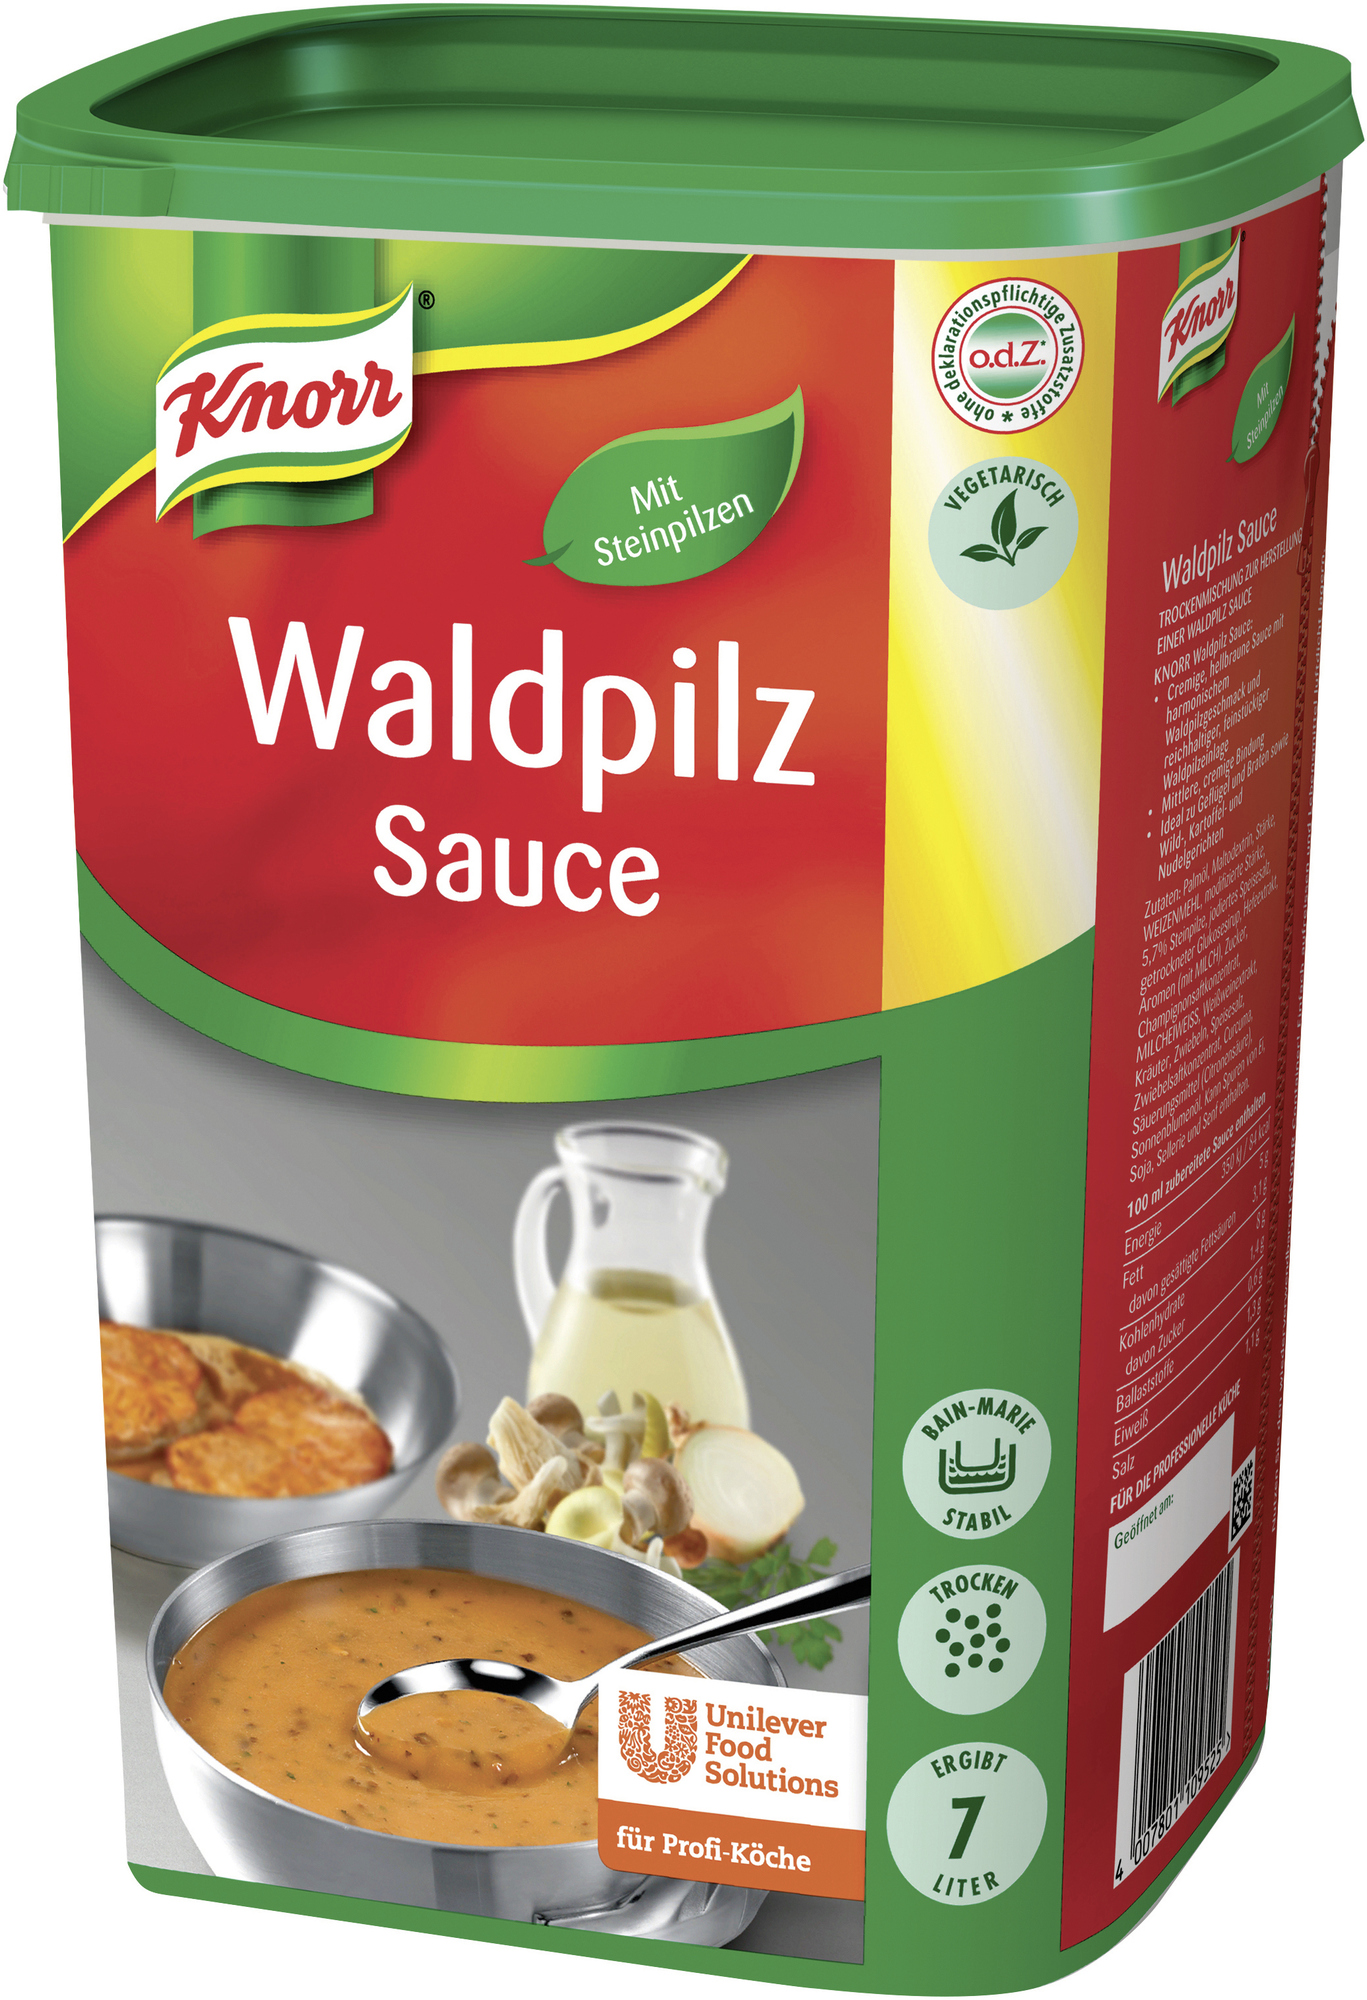 Waldpilz Sauce 1000g